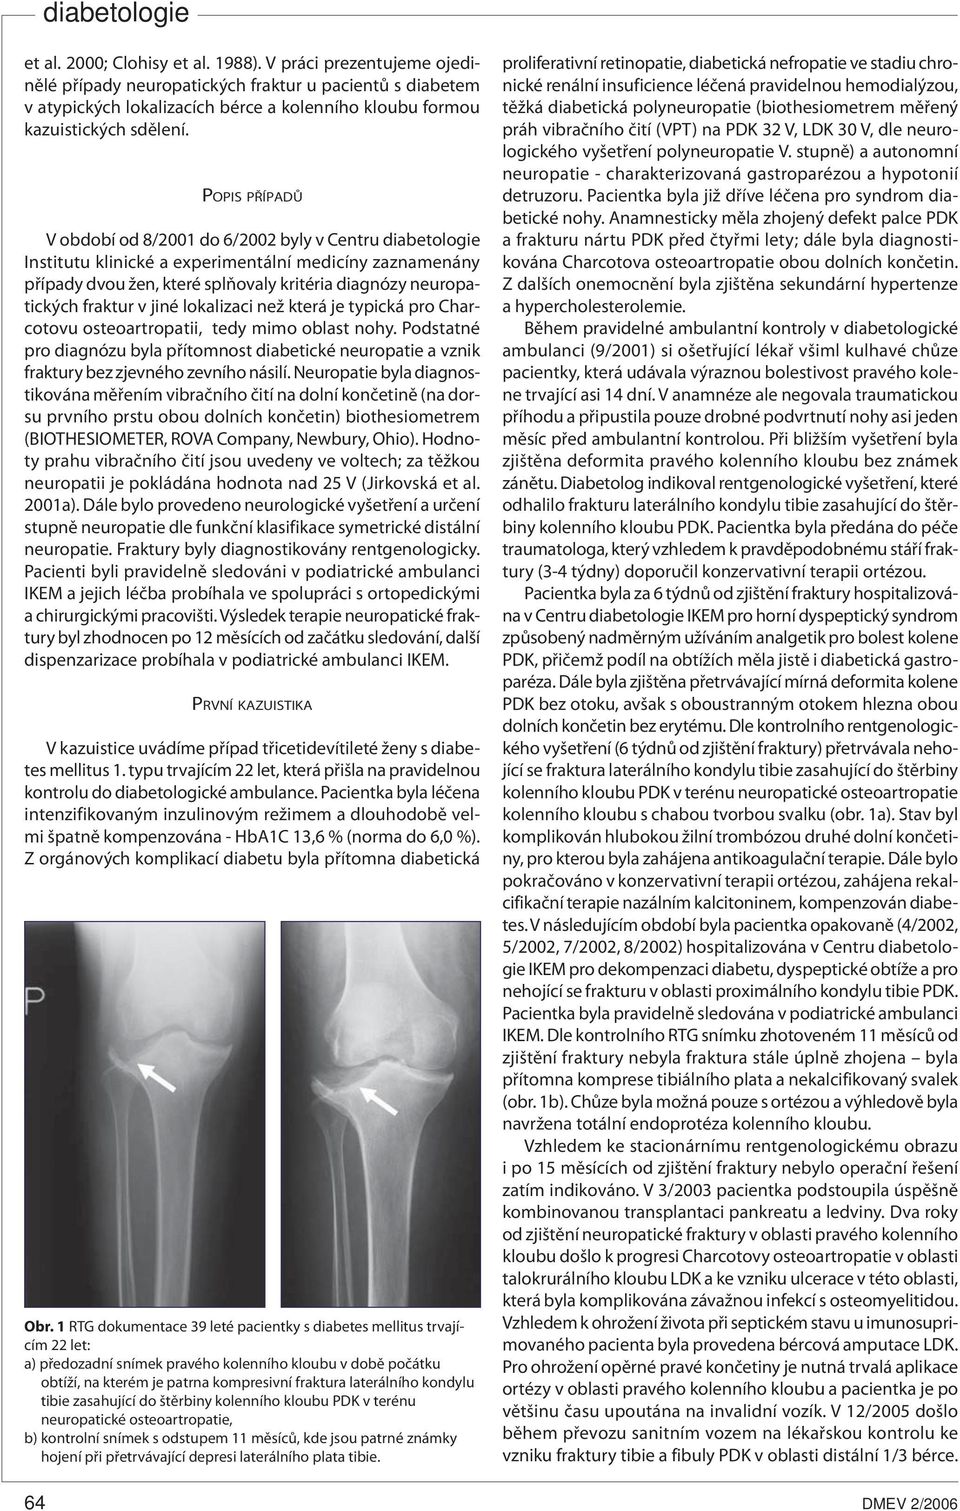 fraktur v jiné lokalizaci než která je typická pro Charcotovu osteoartropatii, tedy mimo oblast nohy.